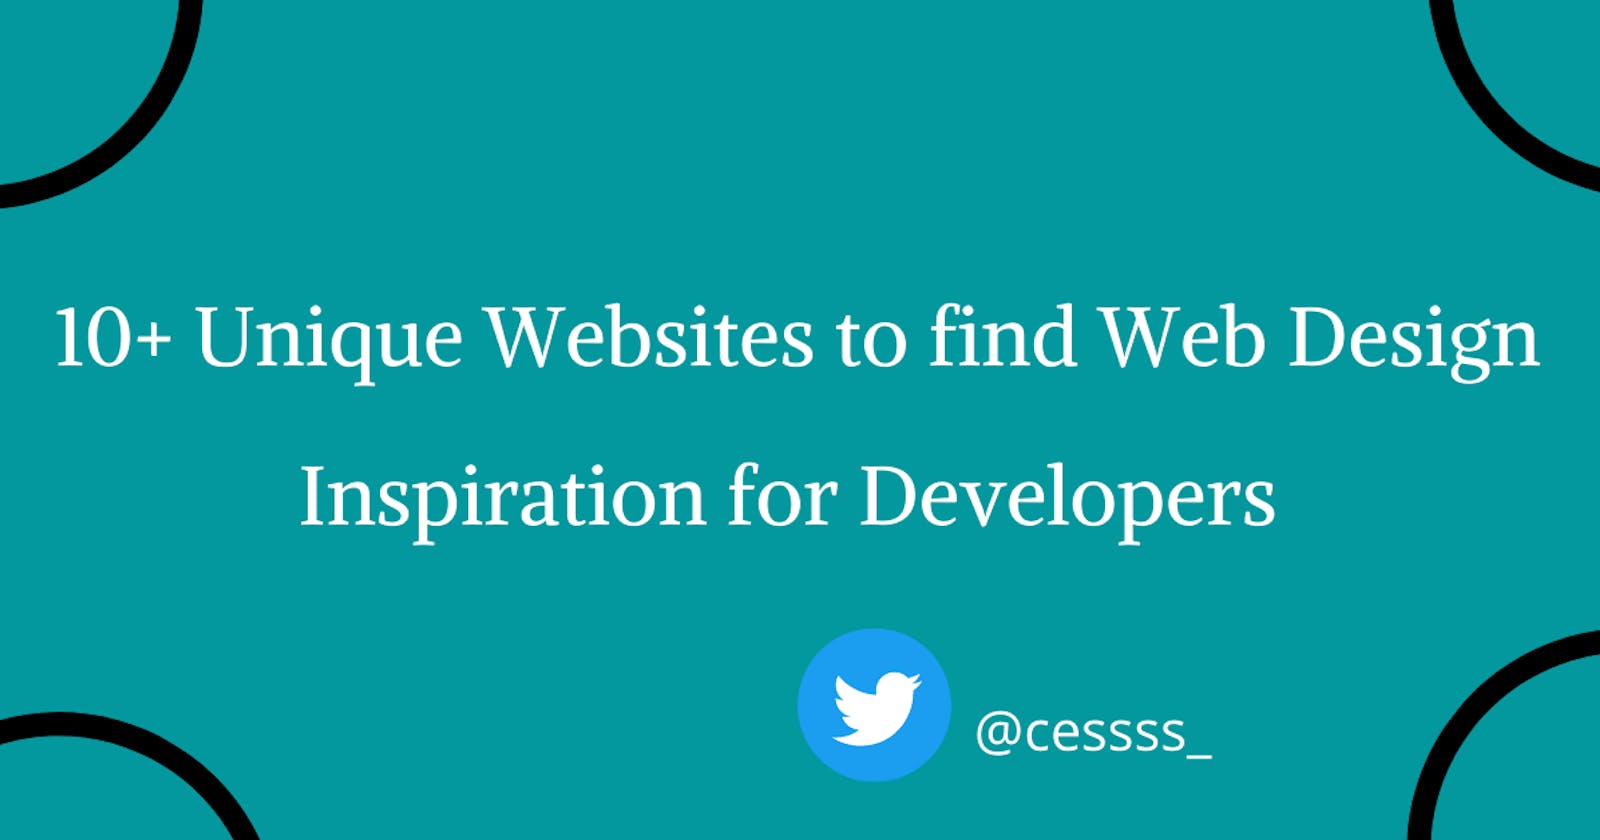 10+ Unique Websites to find Web Design Inspiration for Developers